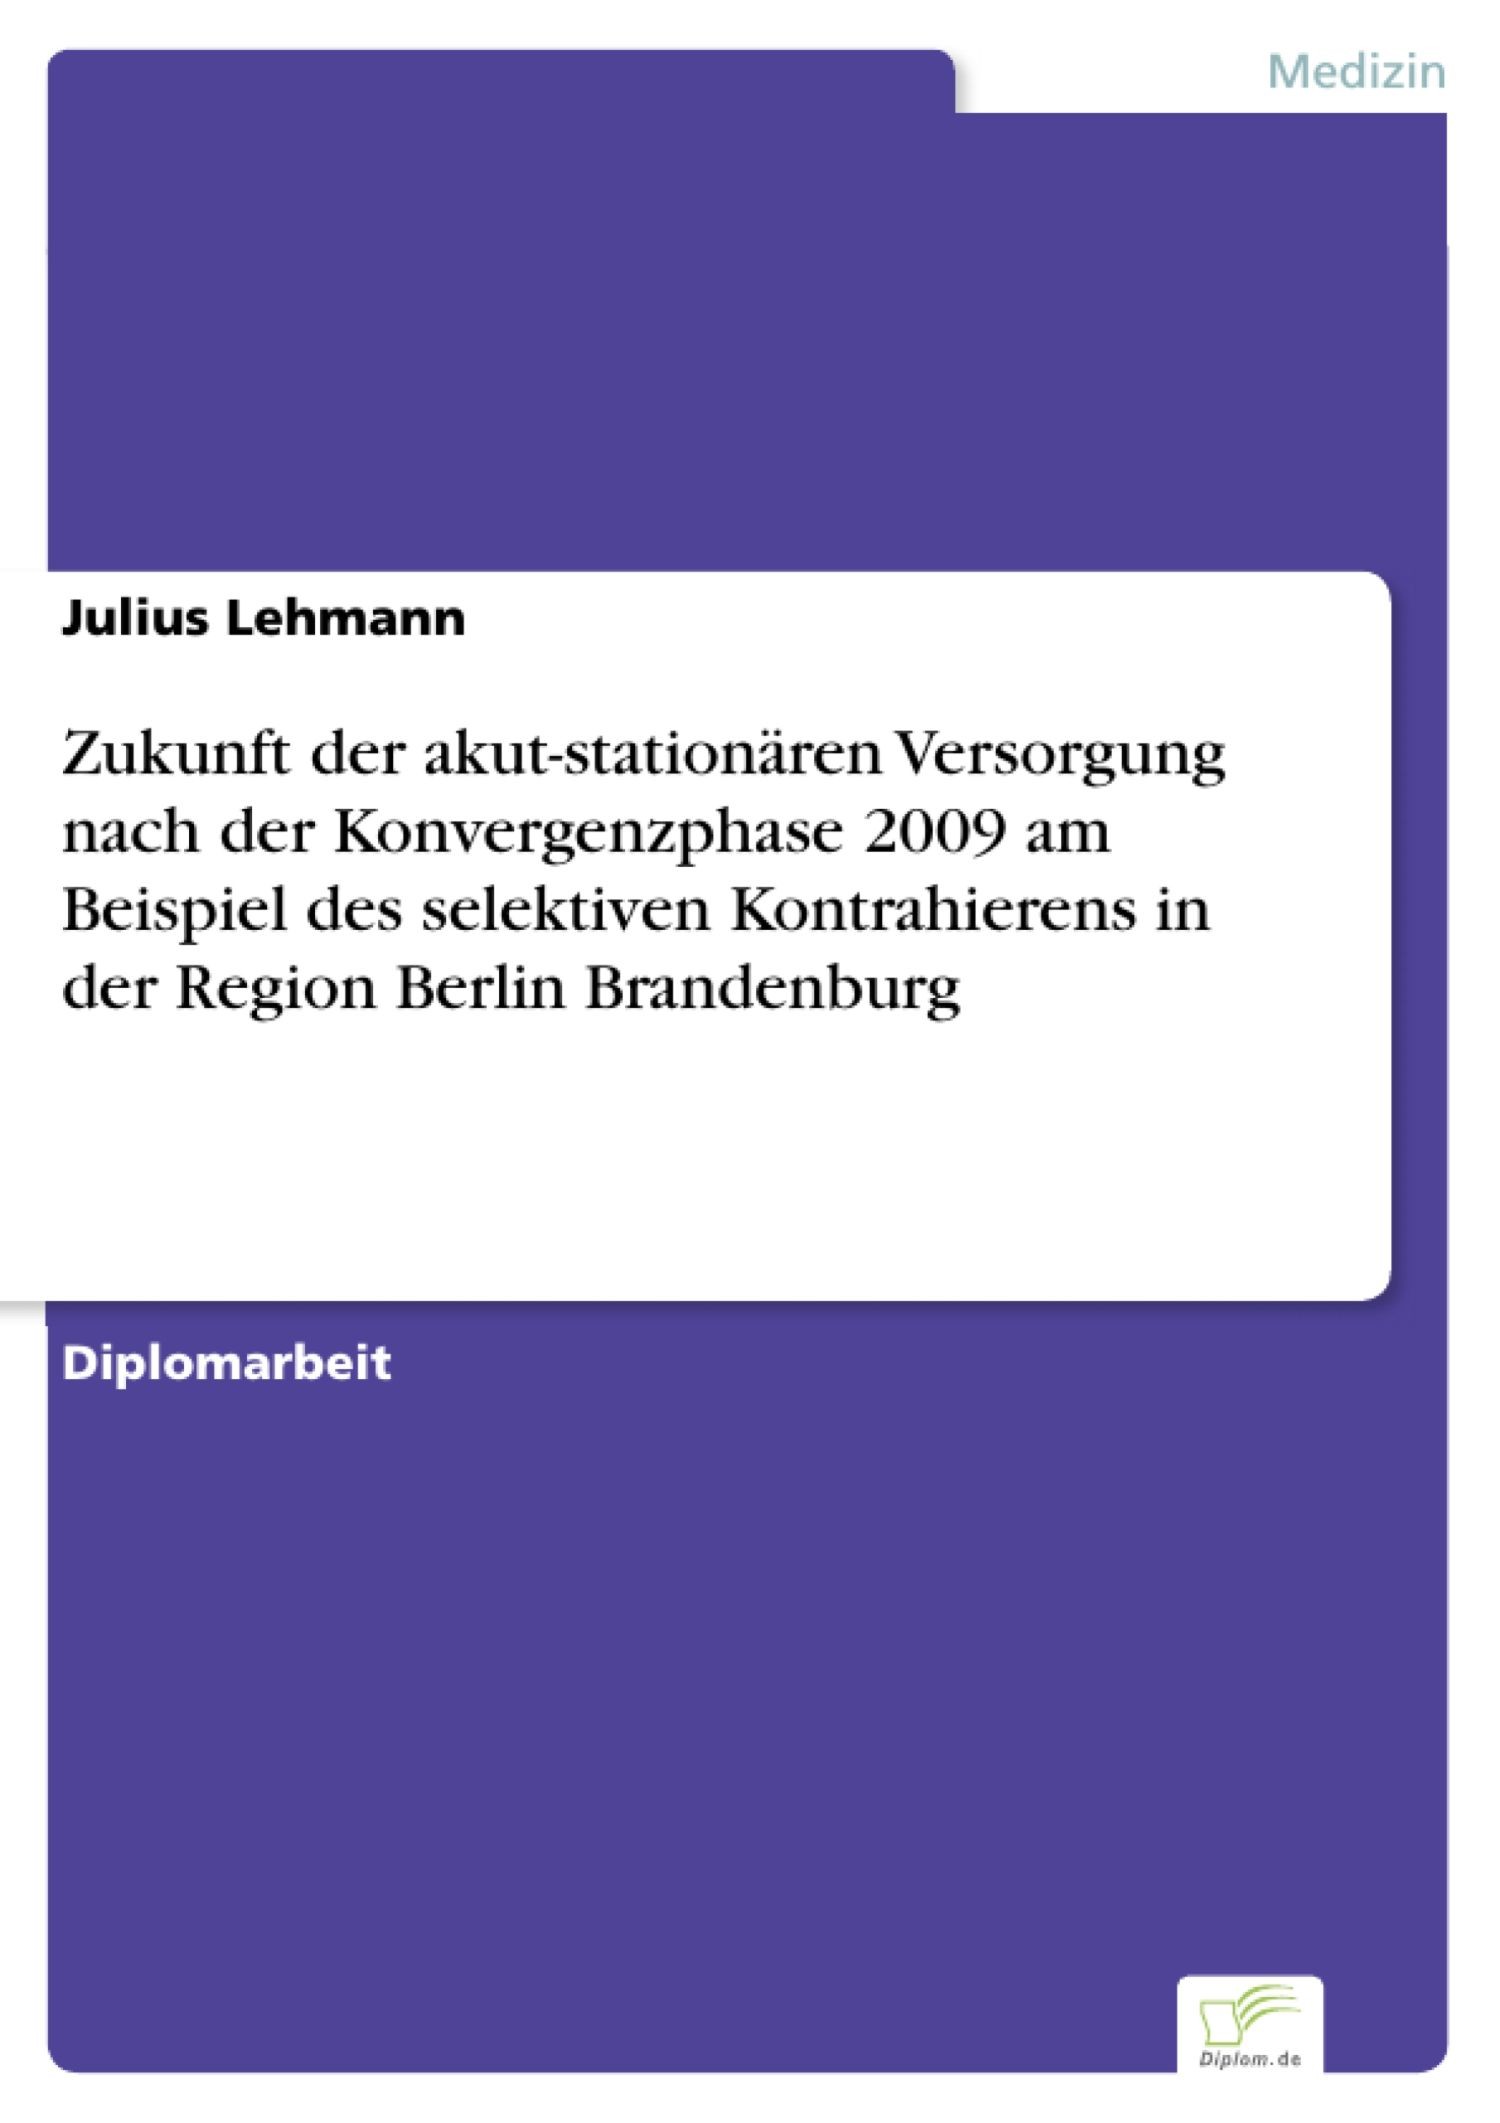 Zukunft der akut-stationären Versorgung nach der Konvergenzphase 2009 am Beispiel des selektiven Kontrahierens in der Region Berlin Brandenburg